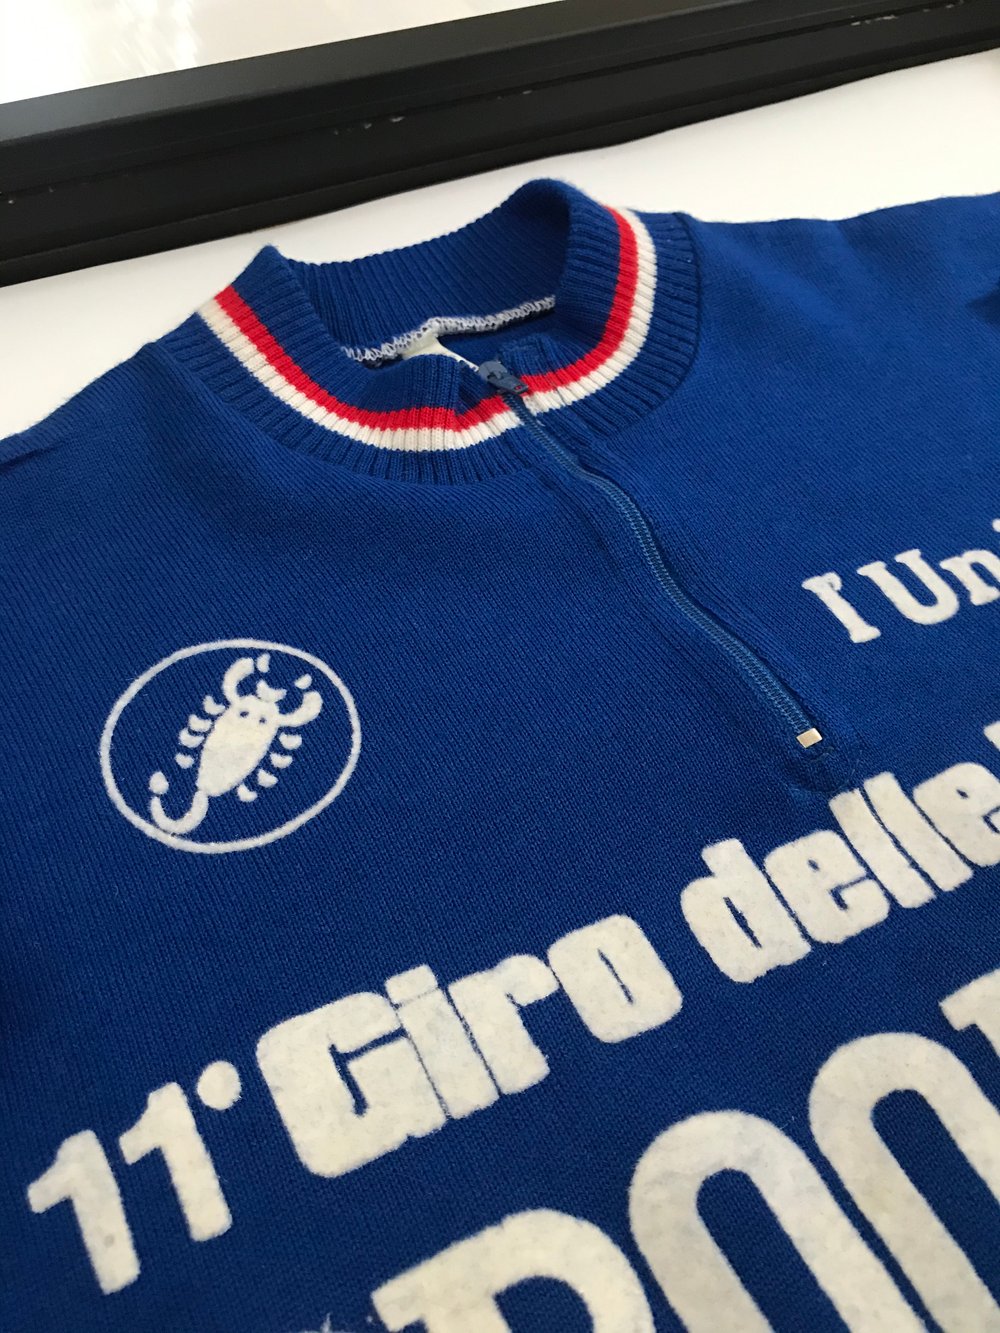 Jiri Skoda ðŸ‡¨ðŸ‡¿ 1986 Giro delle Regioniâ€™s leader jersey 